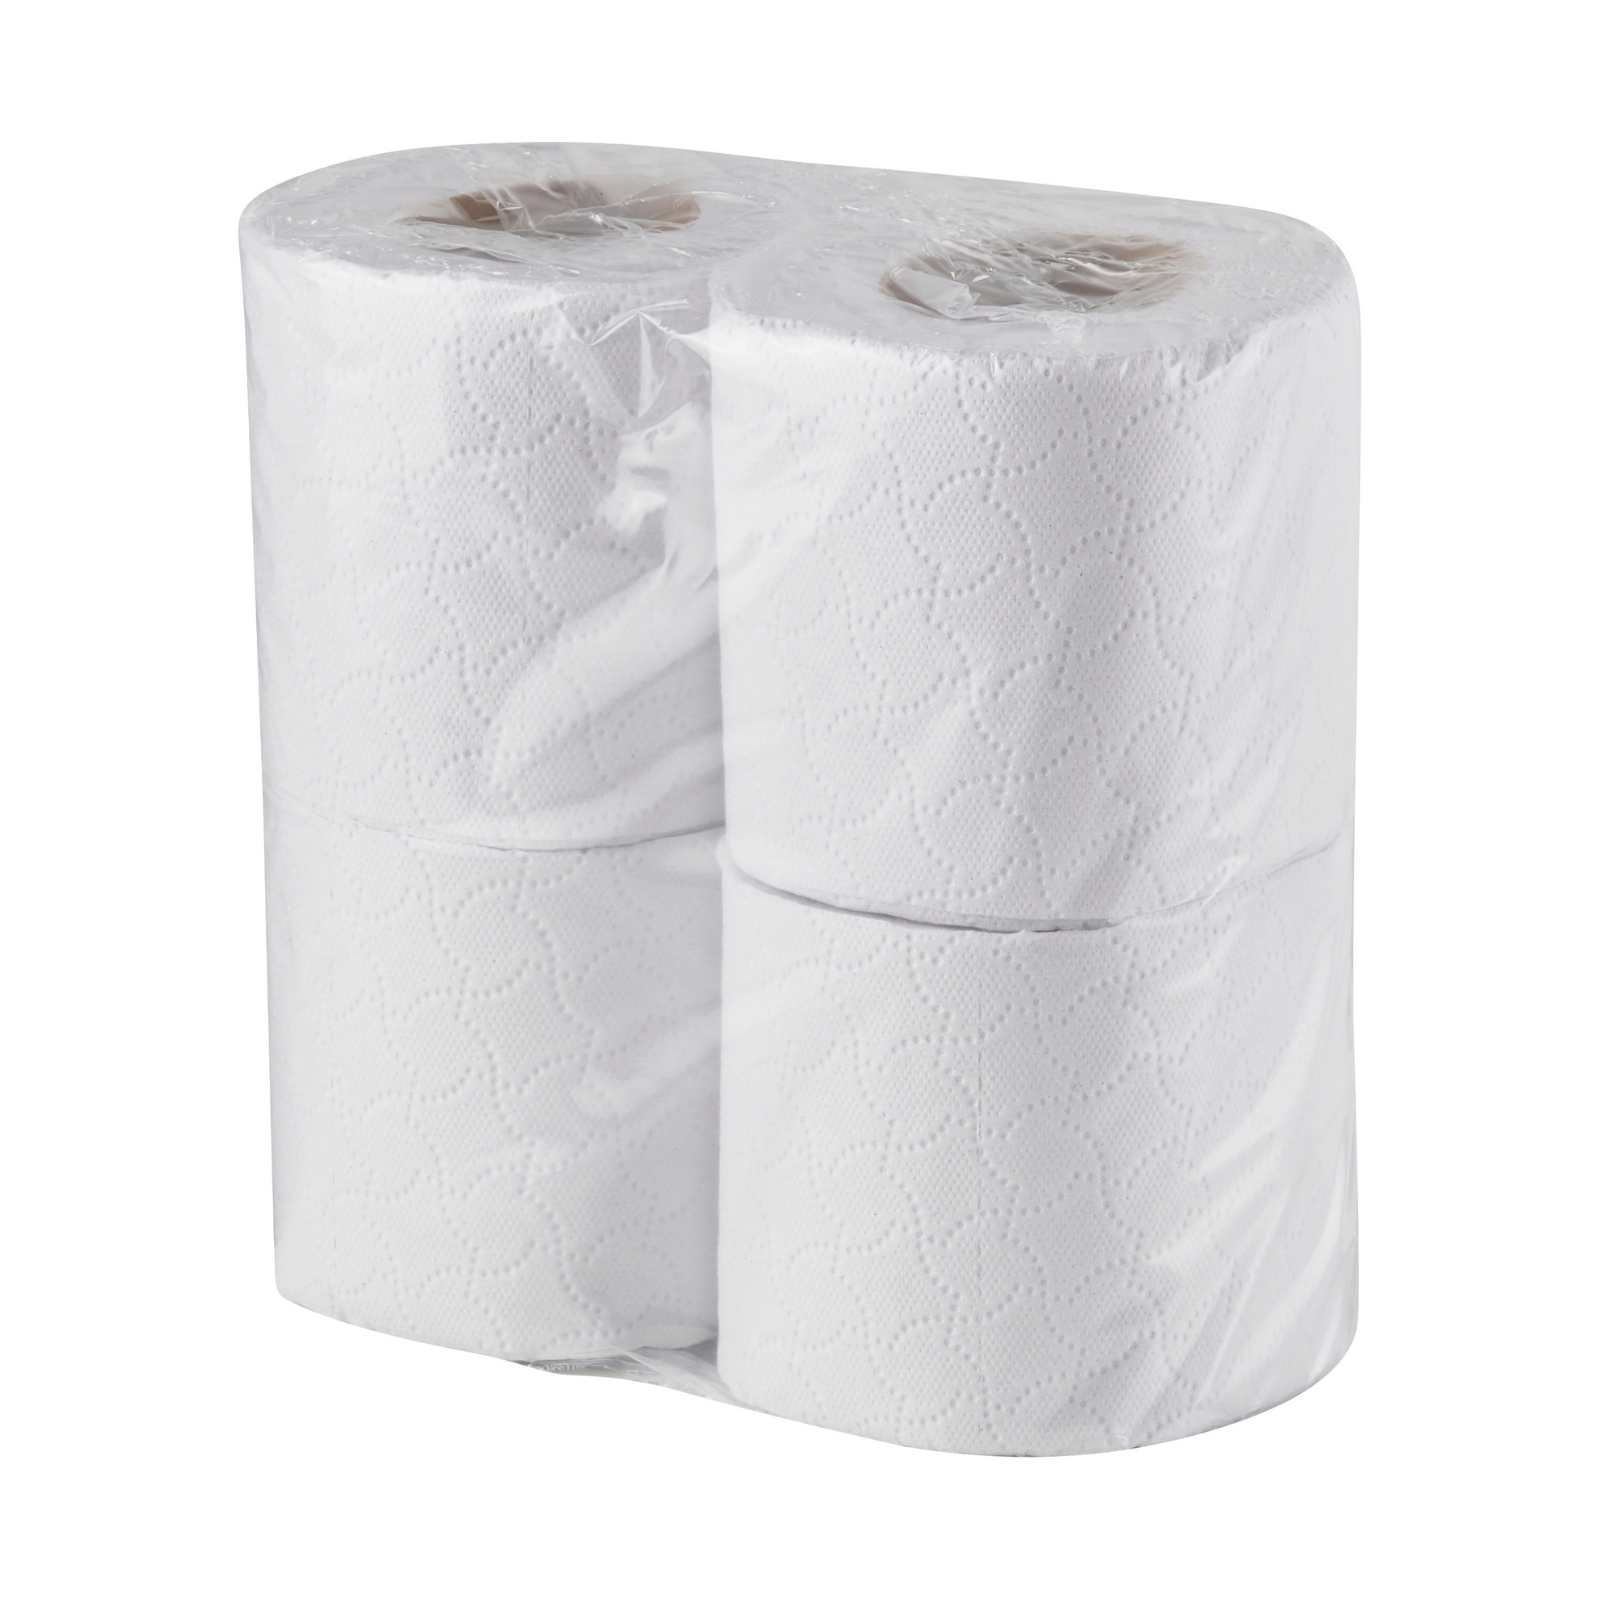 2 Ply Standard Toilet Rolls - 200 sheet